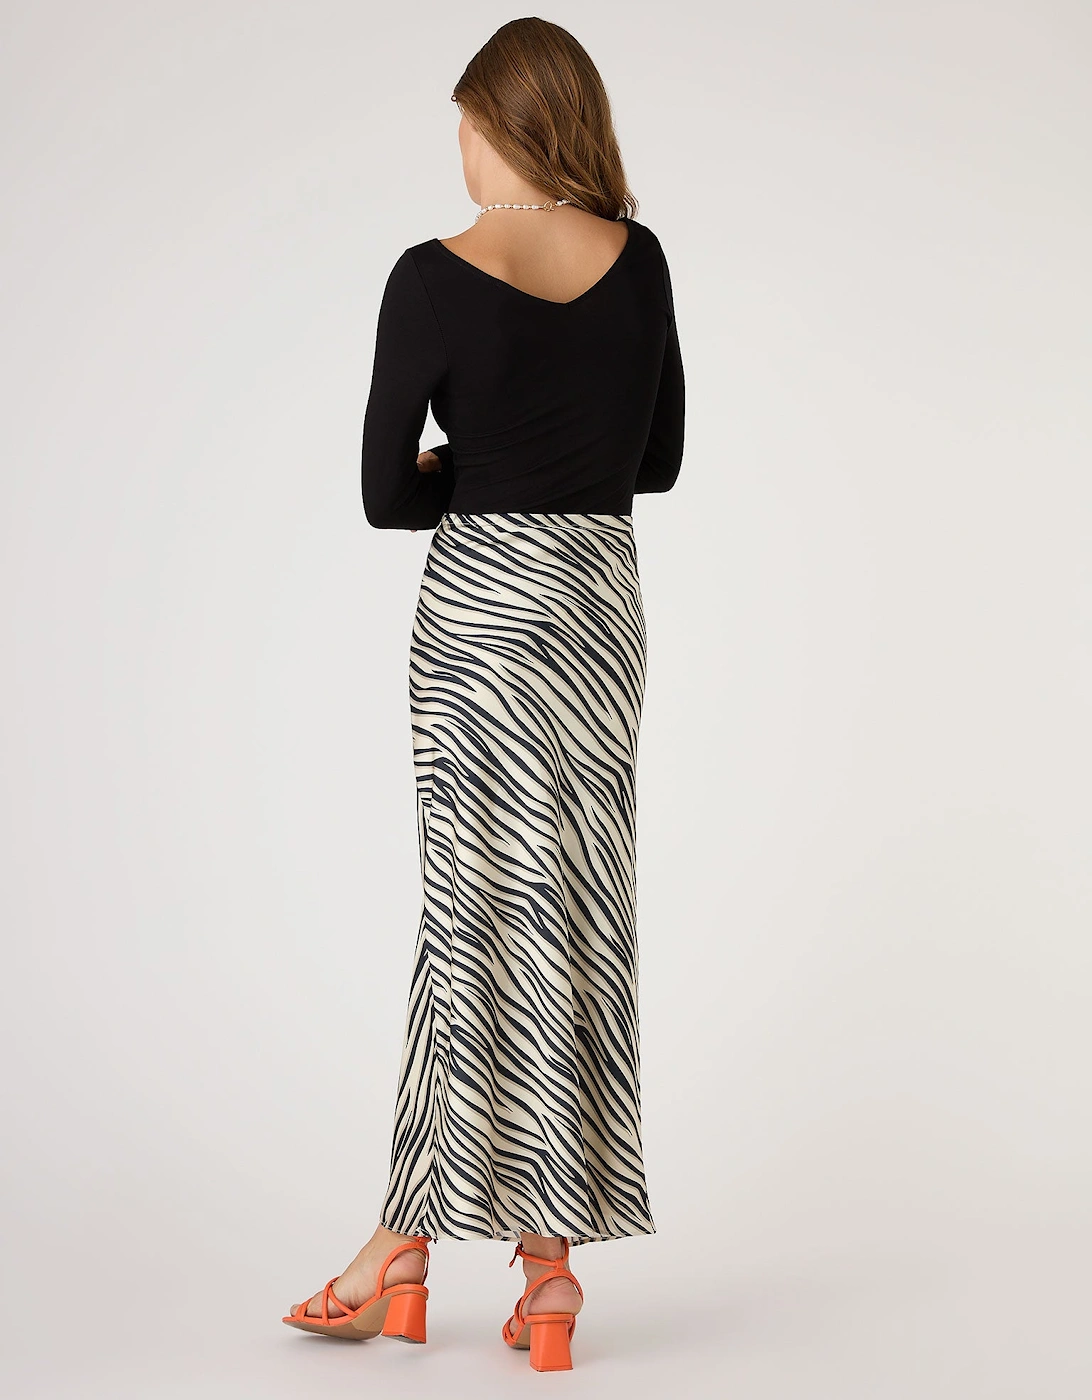 Stella Skirt in Beige Zebra